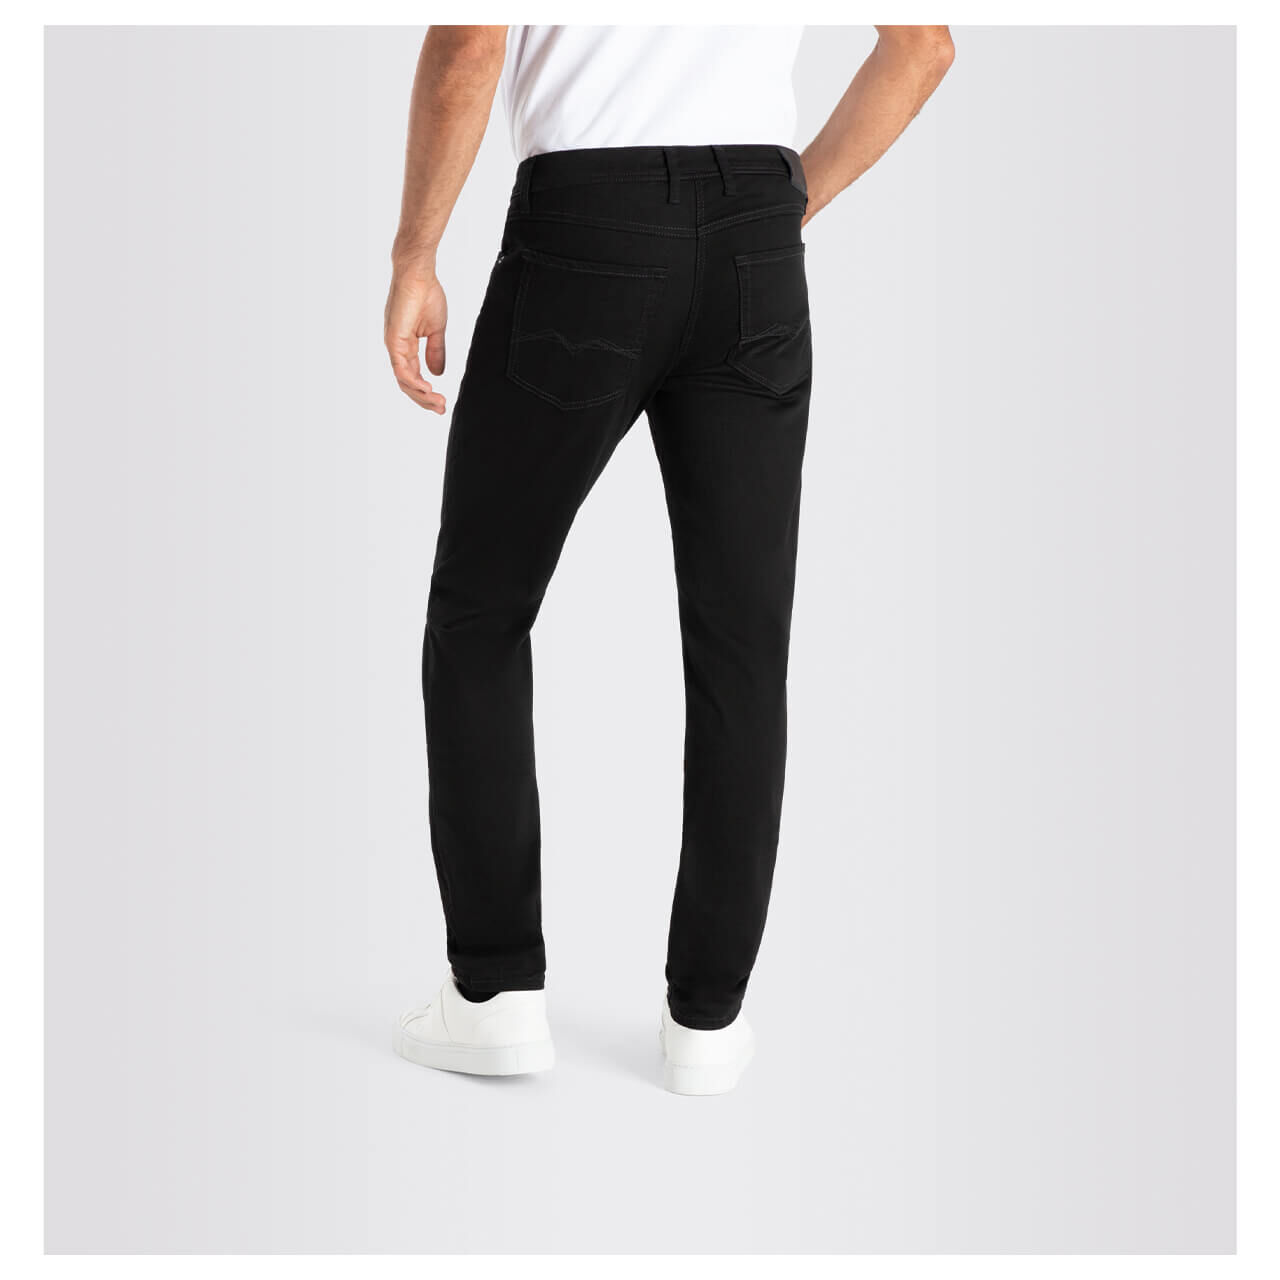 MAC Flexx Jeans stay black